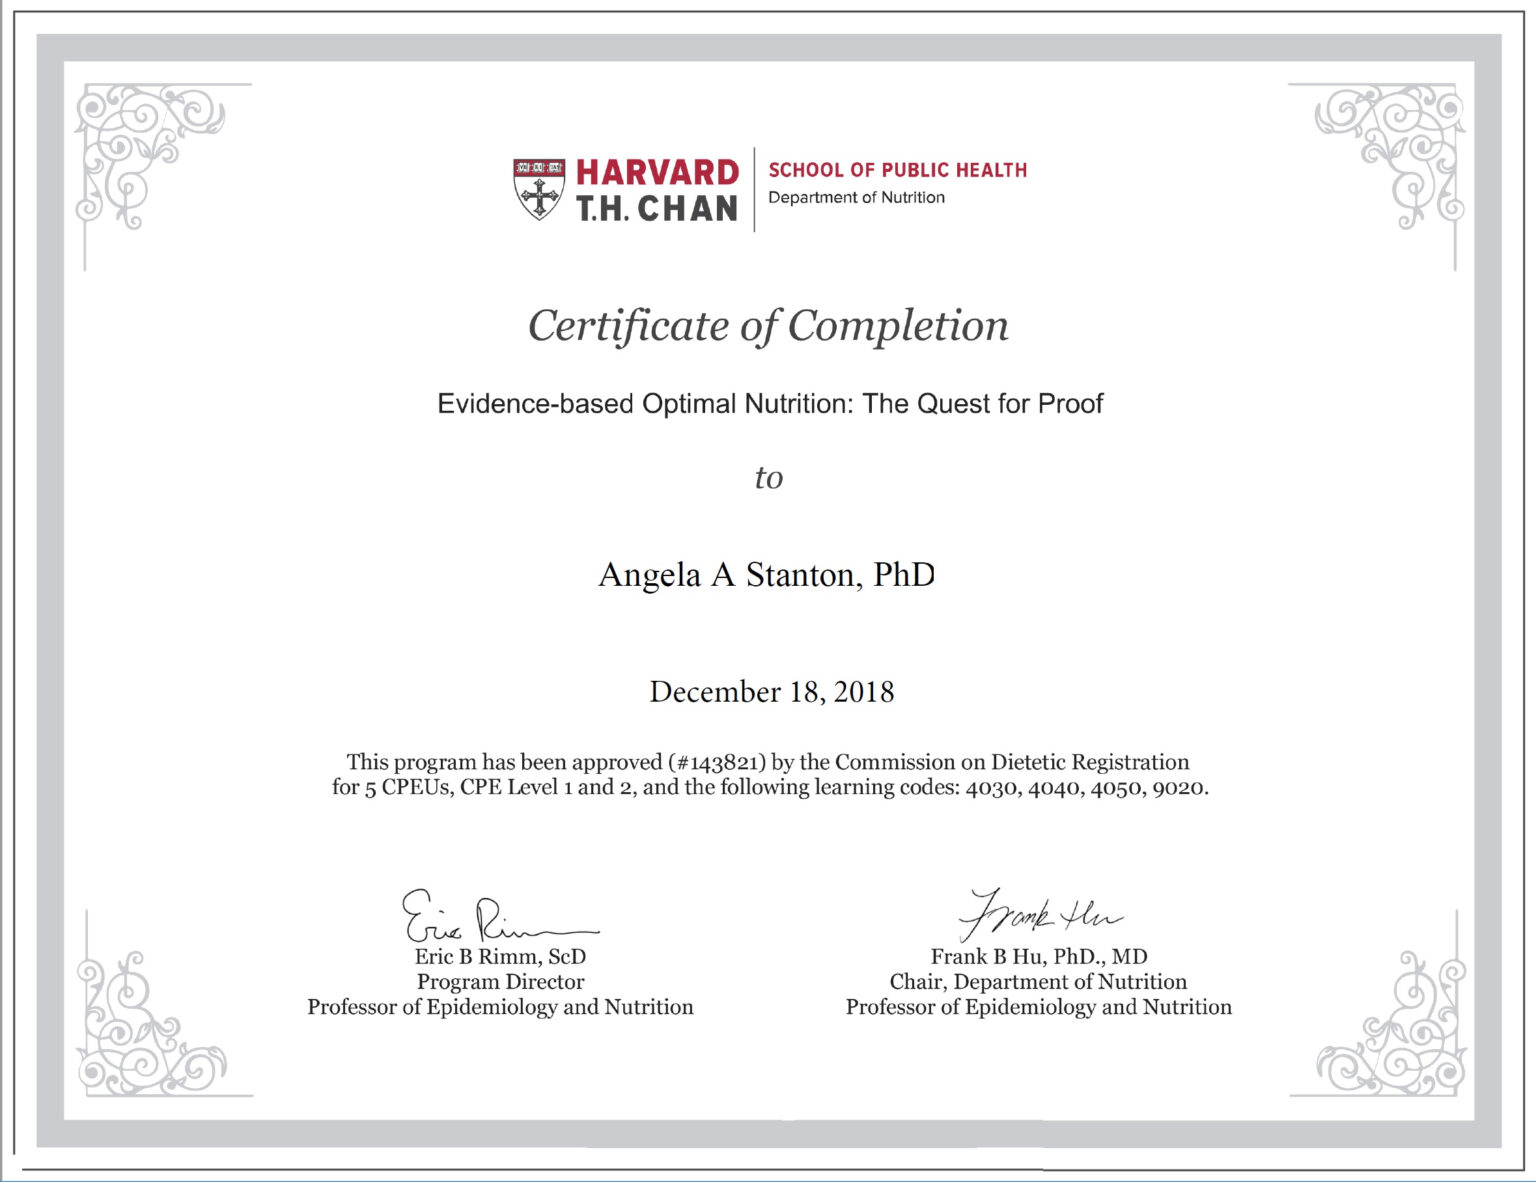 phd-certificate-calep-midnightpig-co-inside-doctorate-certificate